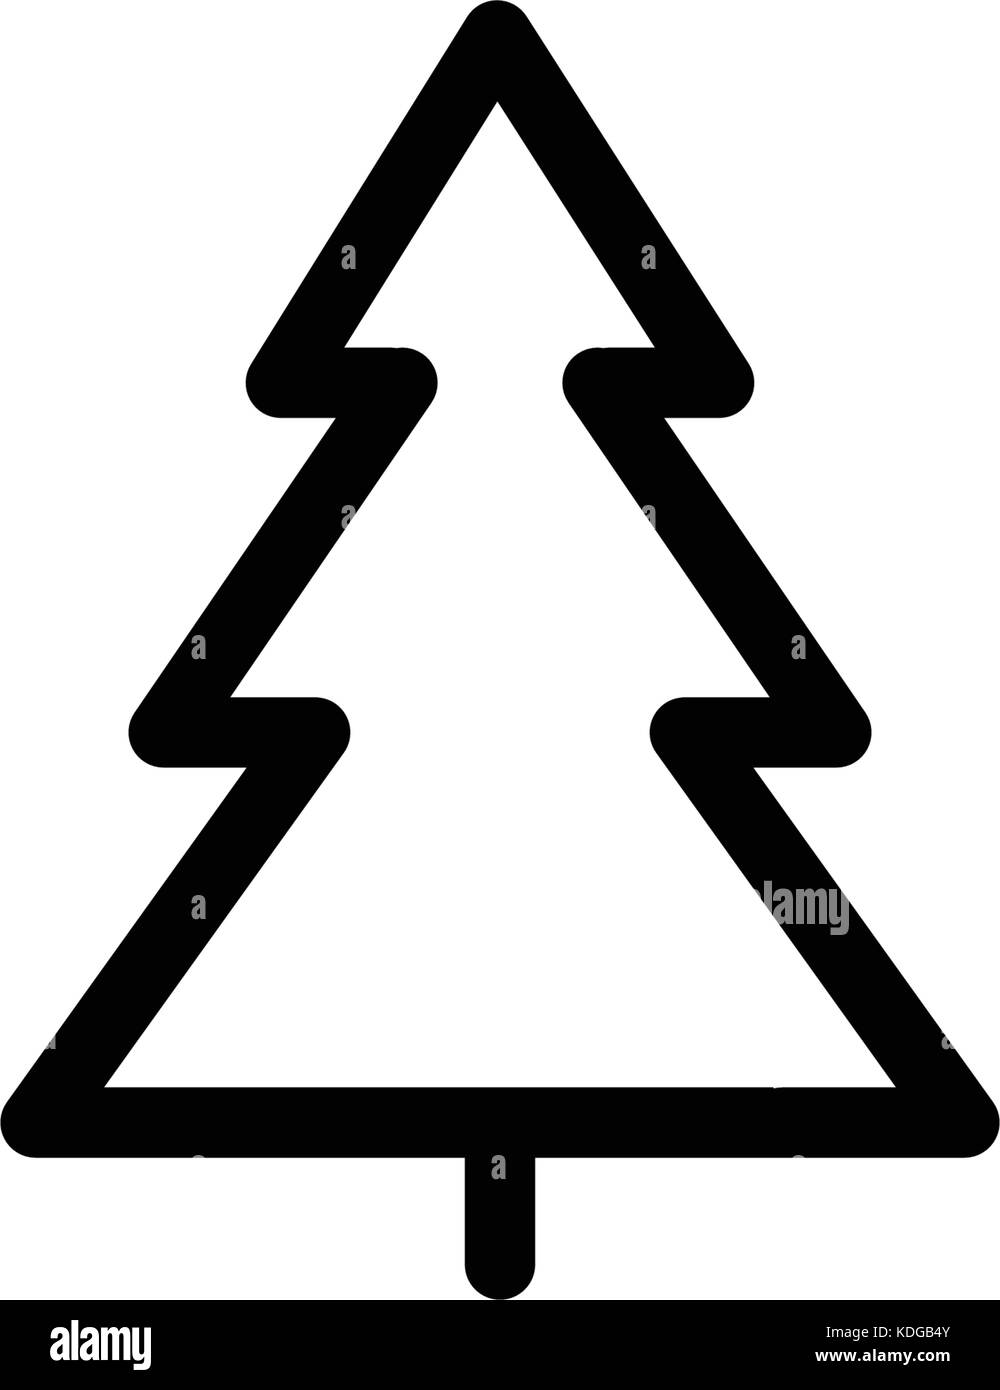 Isolierte schwarze und weiße Farbe Bäume Illustrationen. lineart Stil vektor Wald - Symbol und Logo. Park und Garten flat Zeichen Sammlung. Stock Vektor